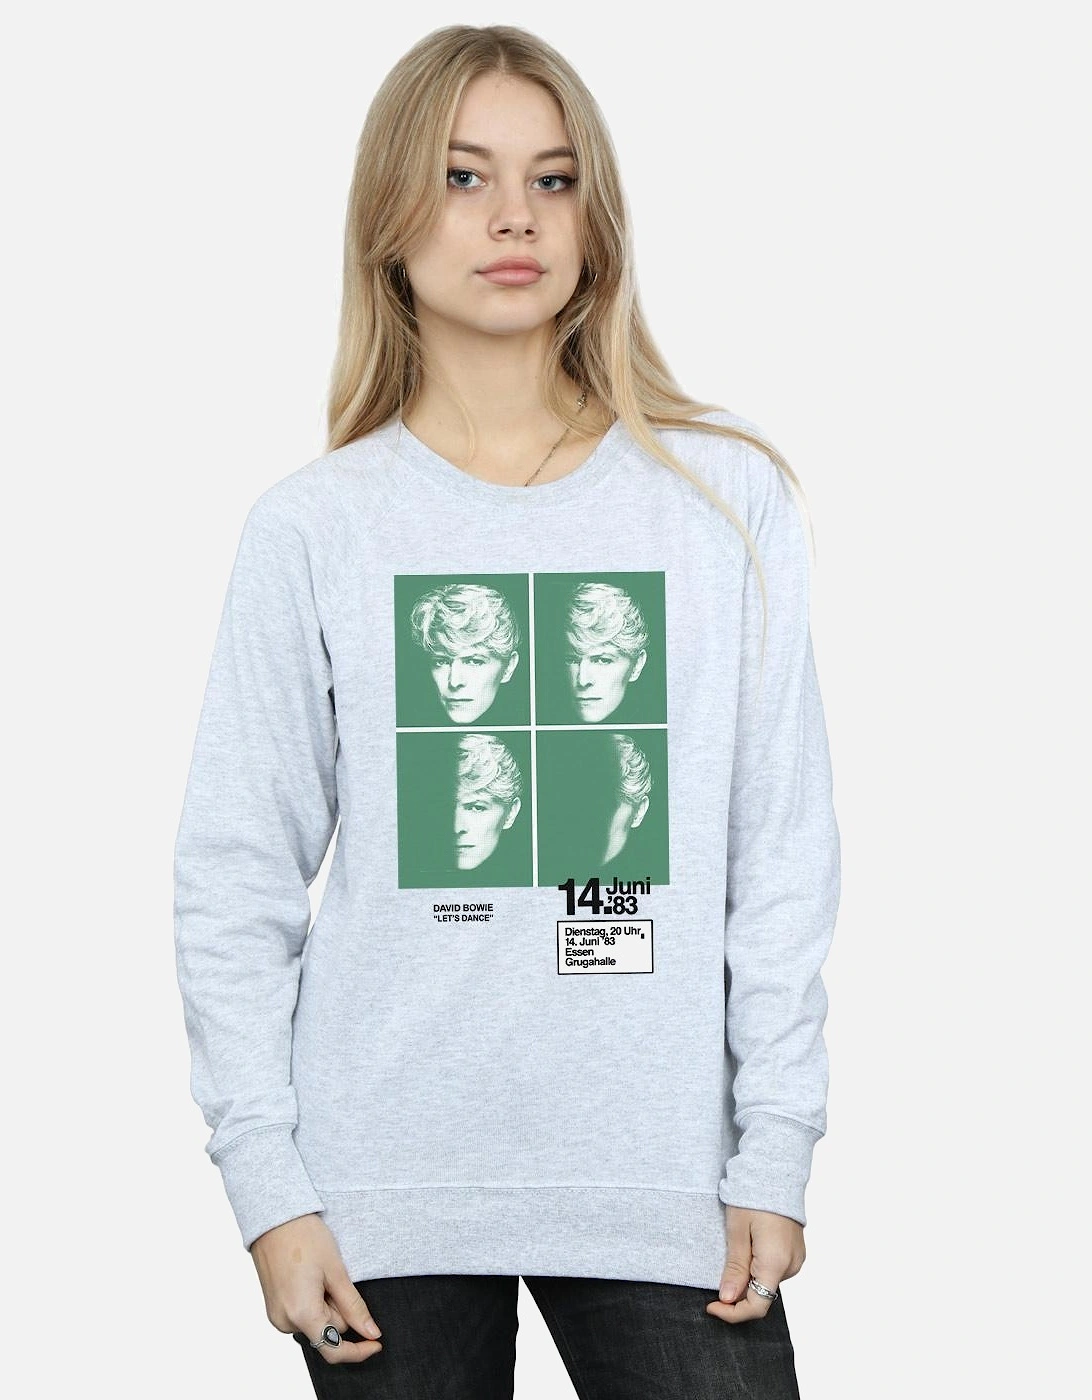 Womens/Ladies 1983 Concert Poster Sweatshirt